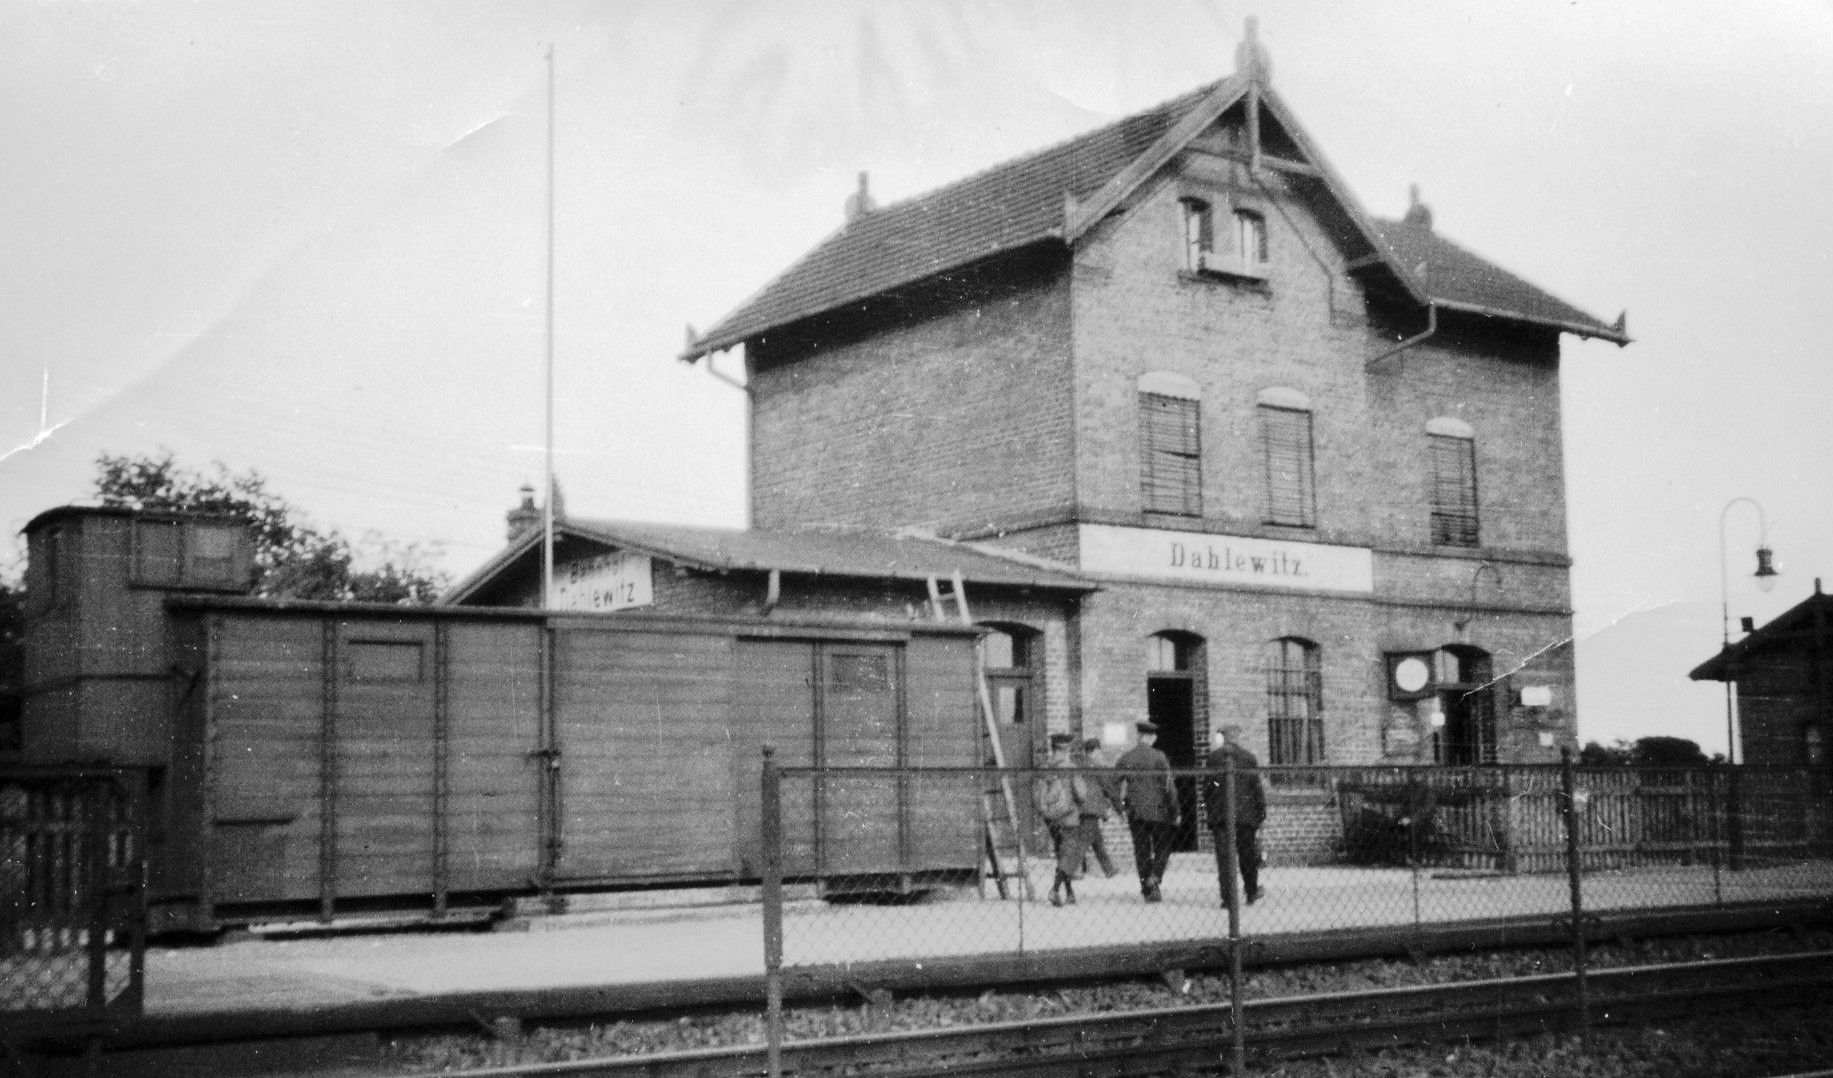 Bahnhof Dahlewitz vor dem Krieg
(aus der Sammlung des Vereins Historisches Dorf Dahlewitz)